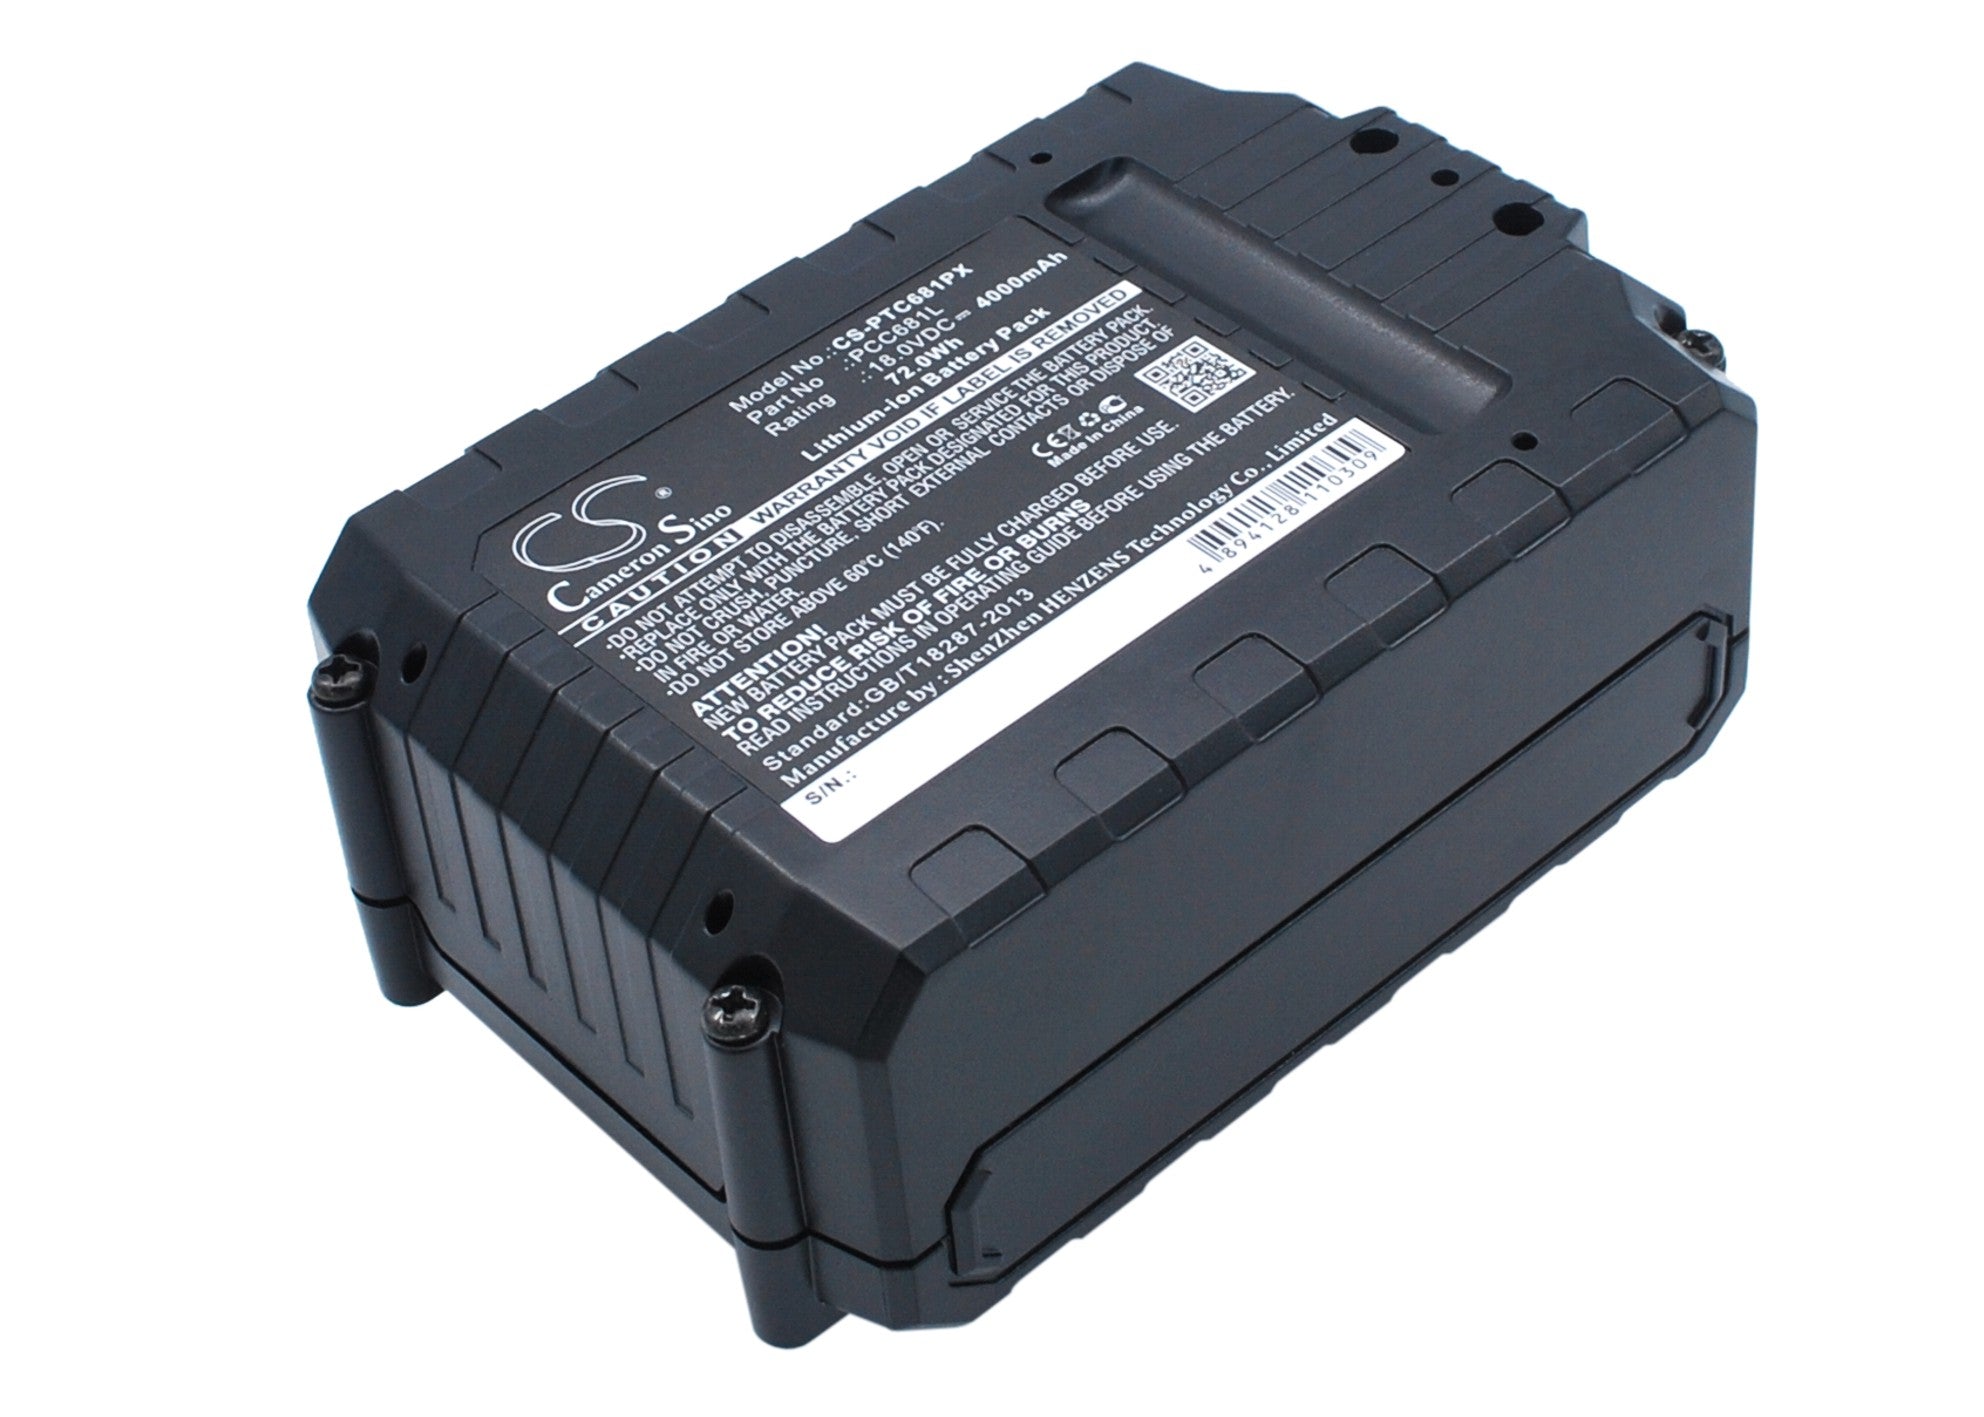 Black & Decker LST400 Power Tool Batteries